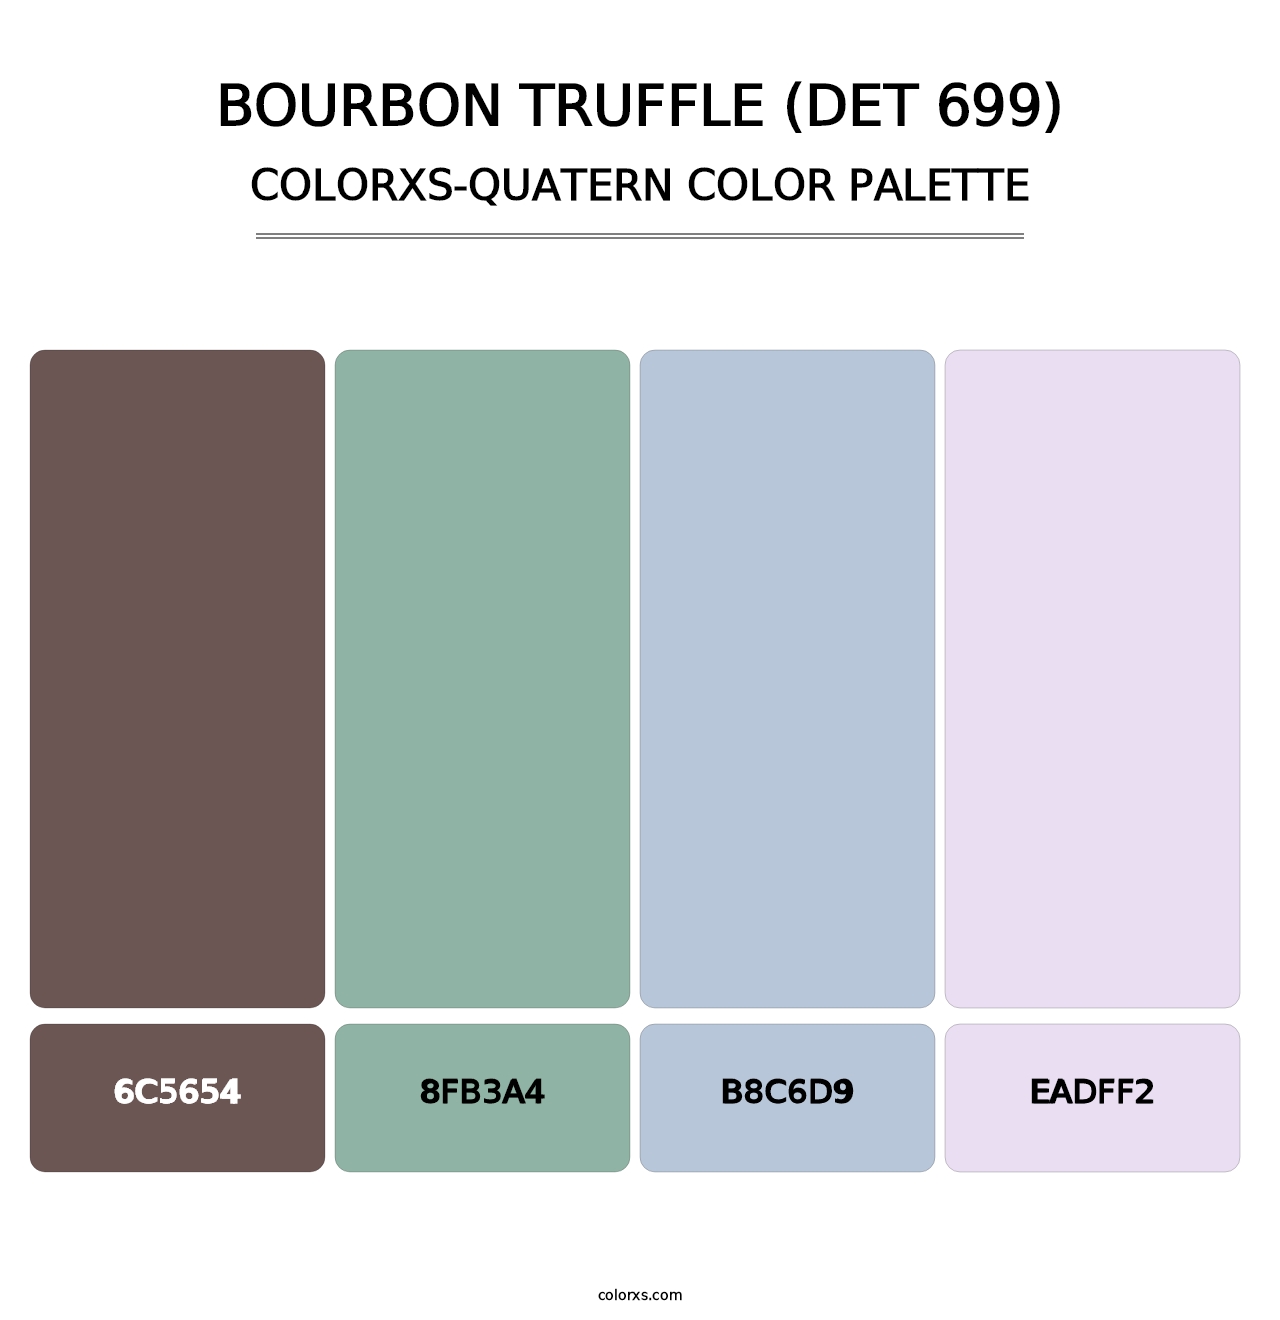 Bourbon Truffle (DET 699) - Colorxs Quatern Palette